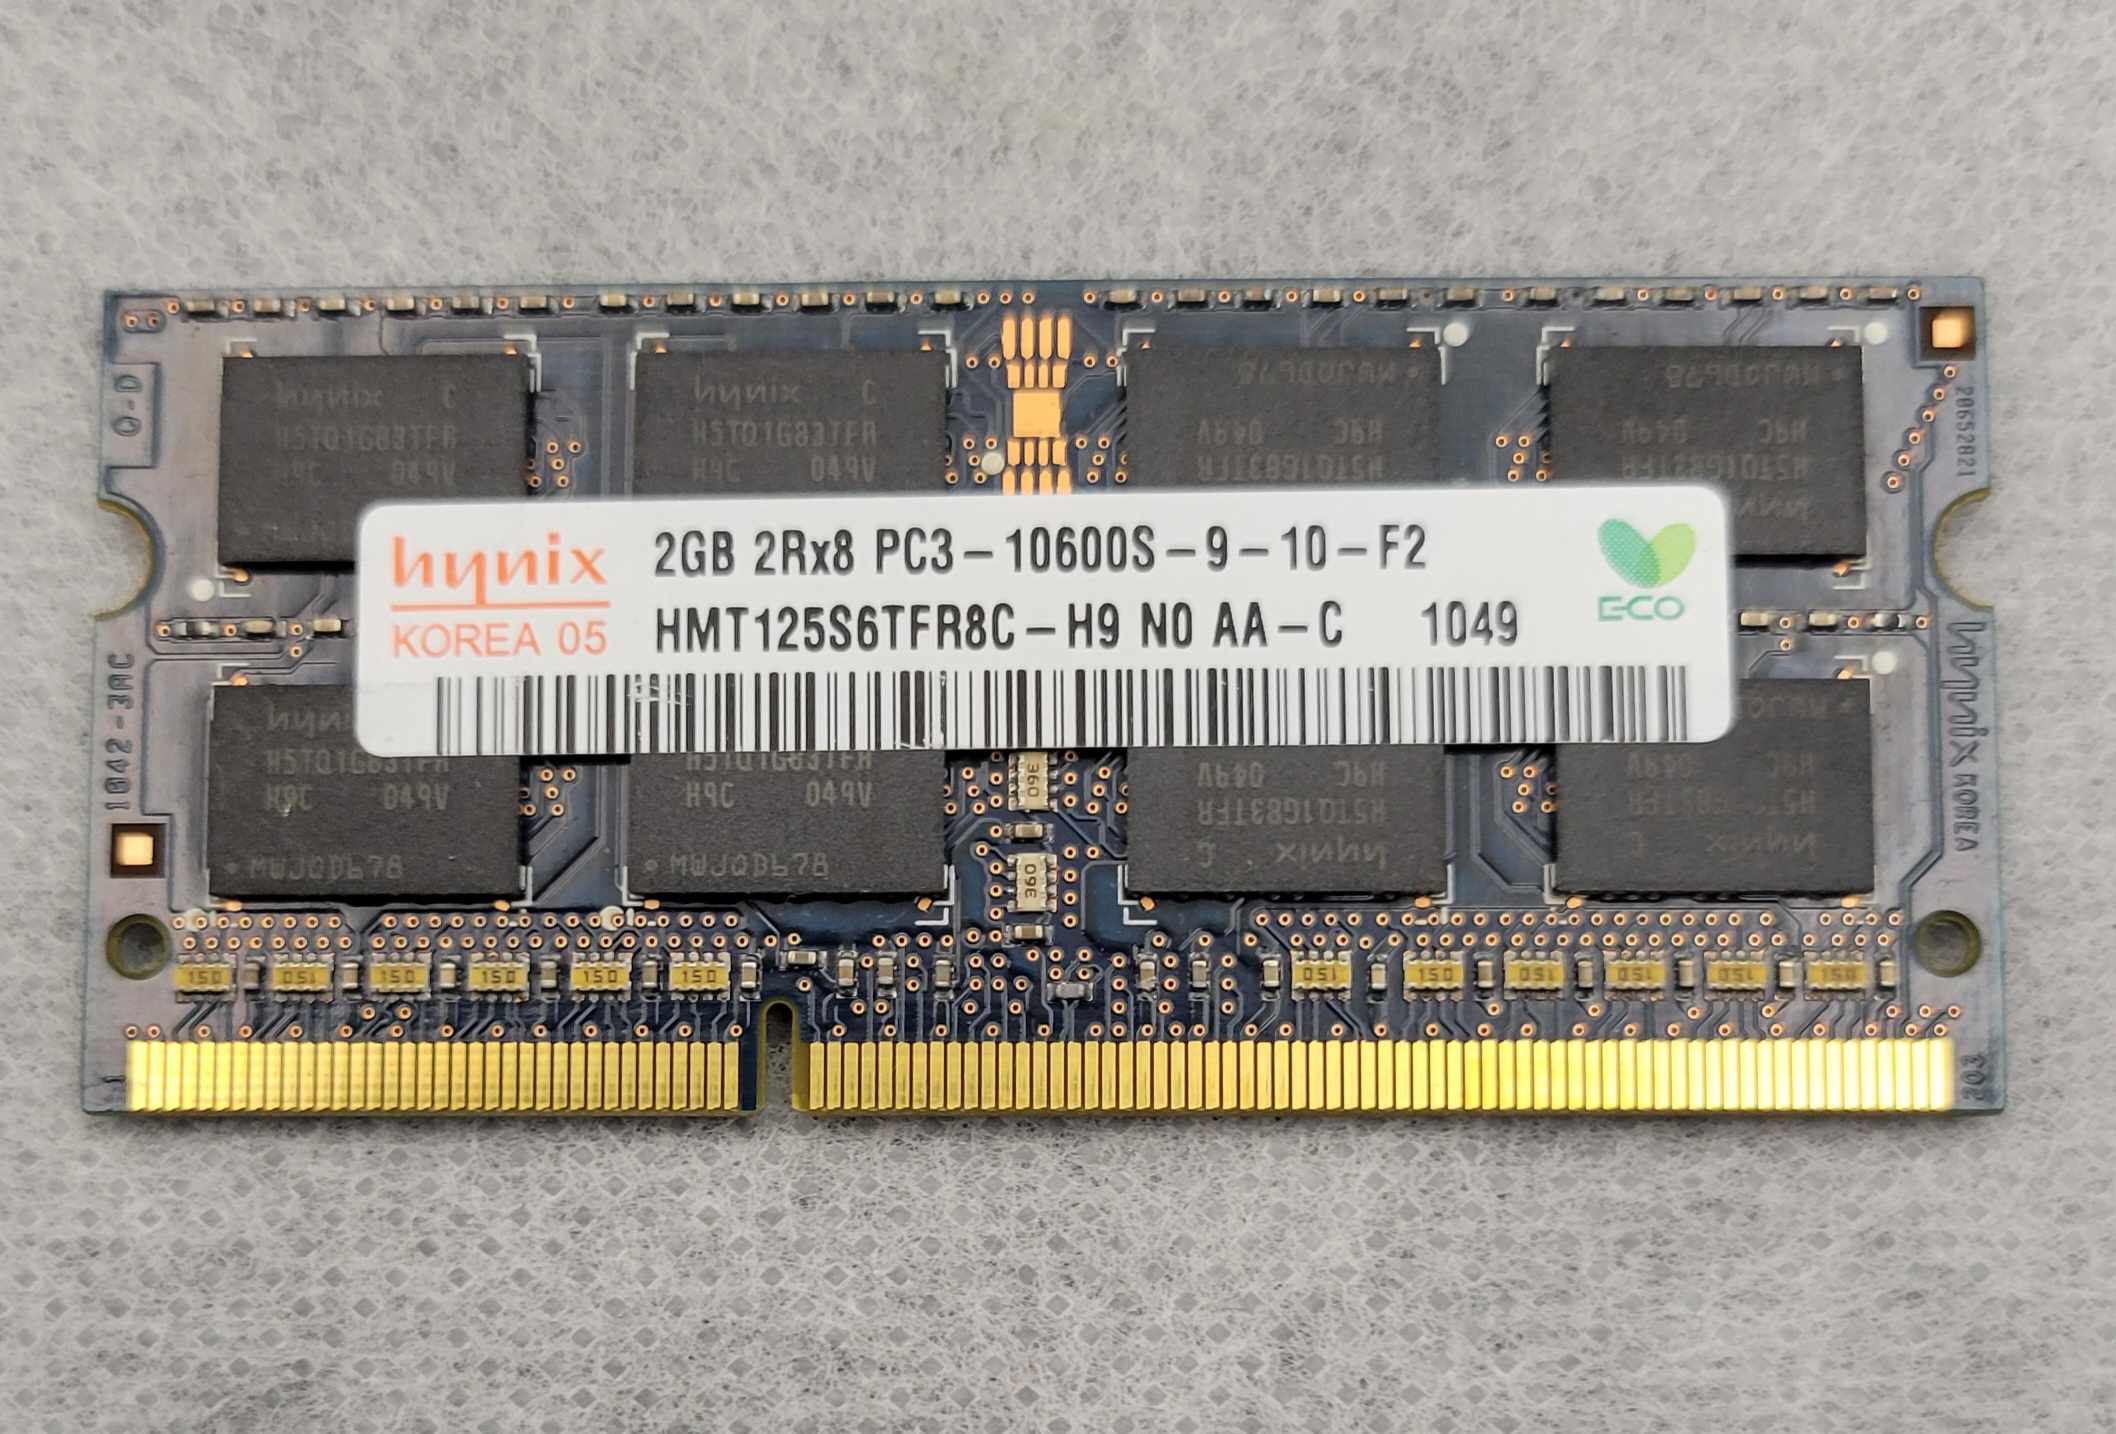 Macbook Pro 2GB 2Rx8 PC3 10600S memory modules Hynix